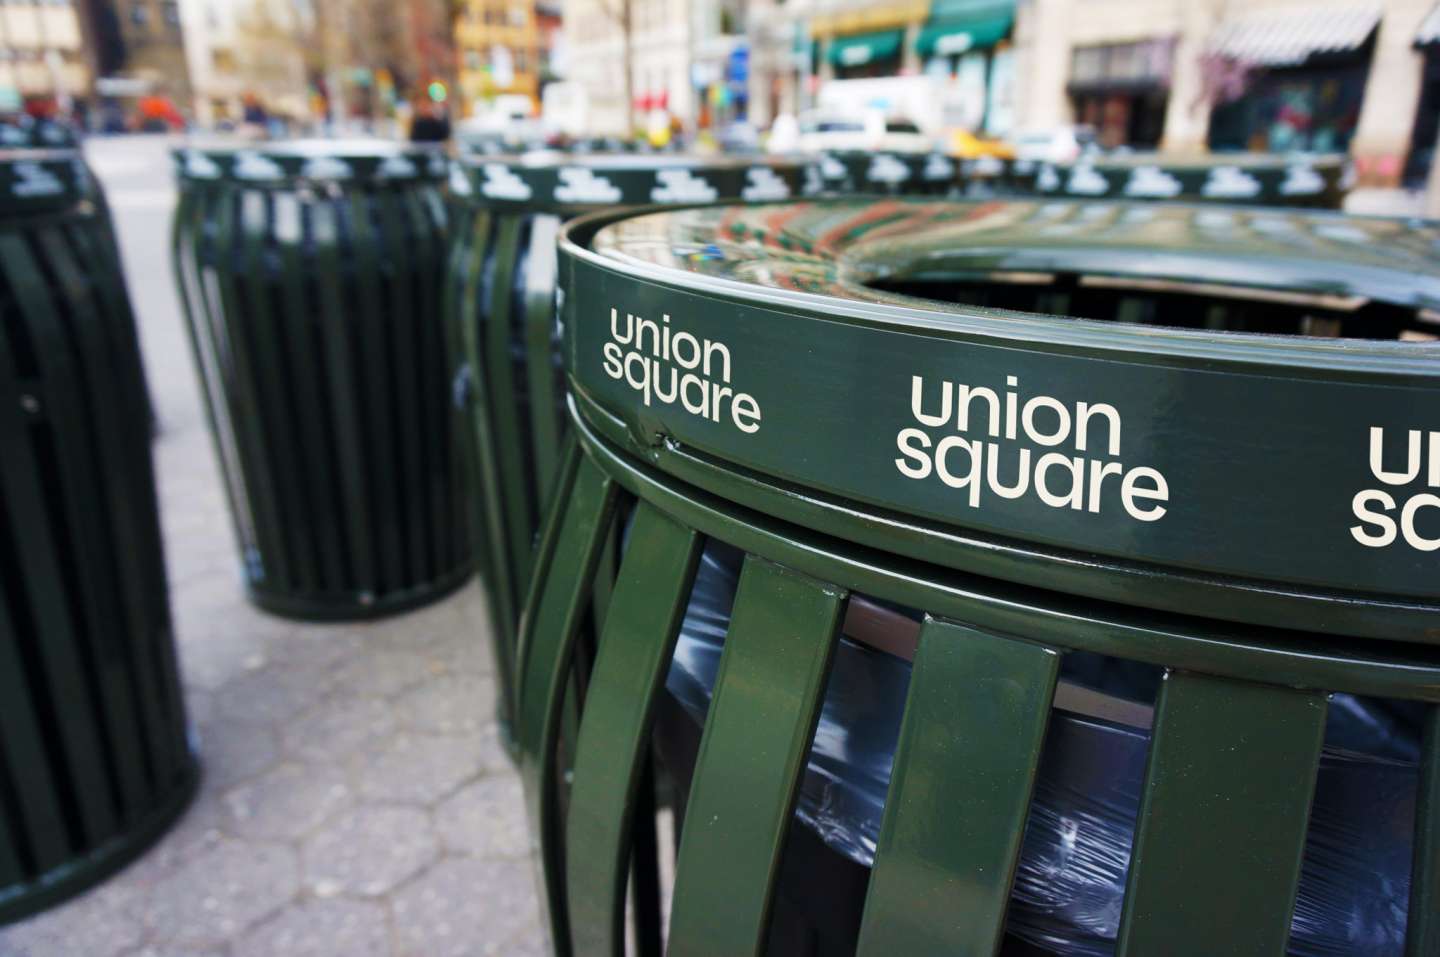 Union Square Rebrand